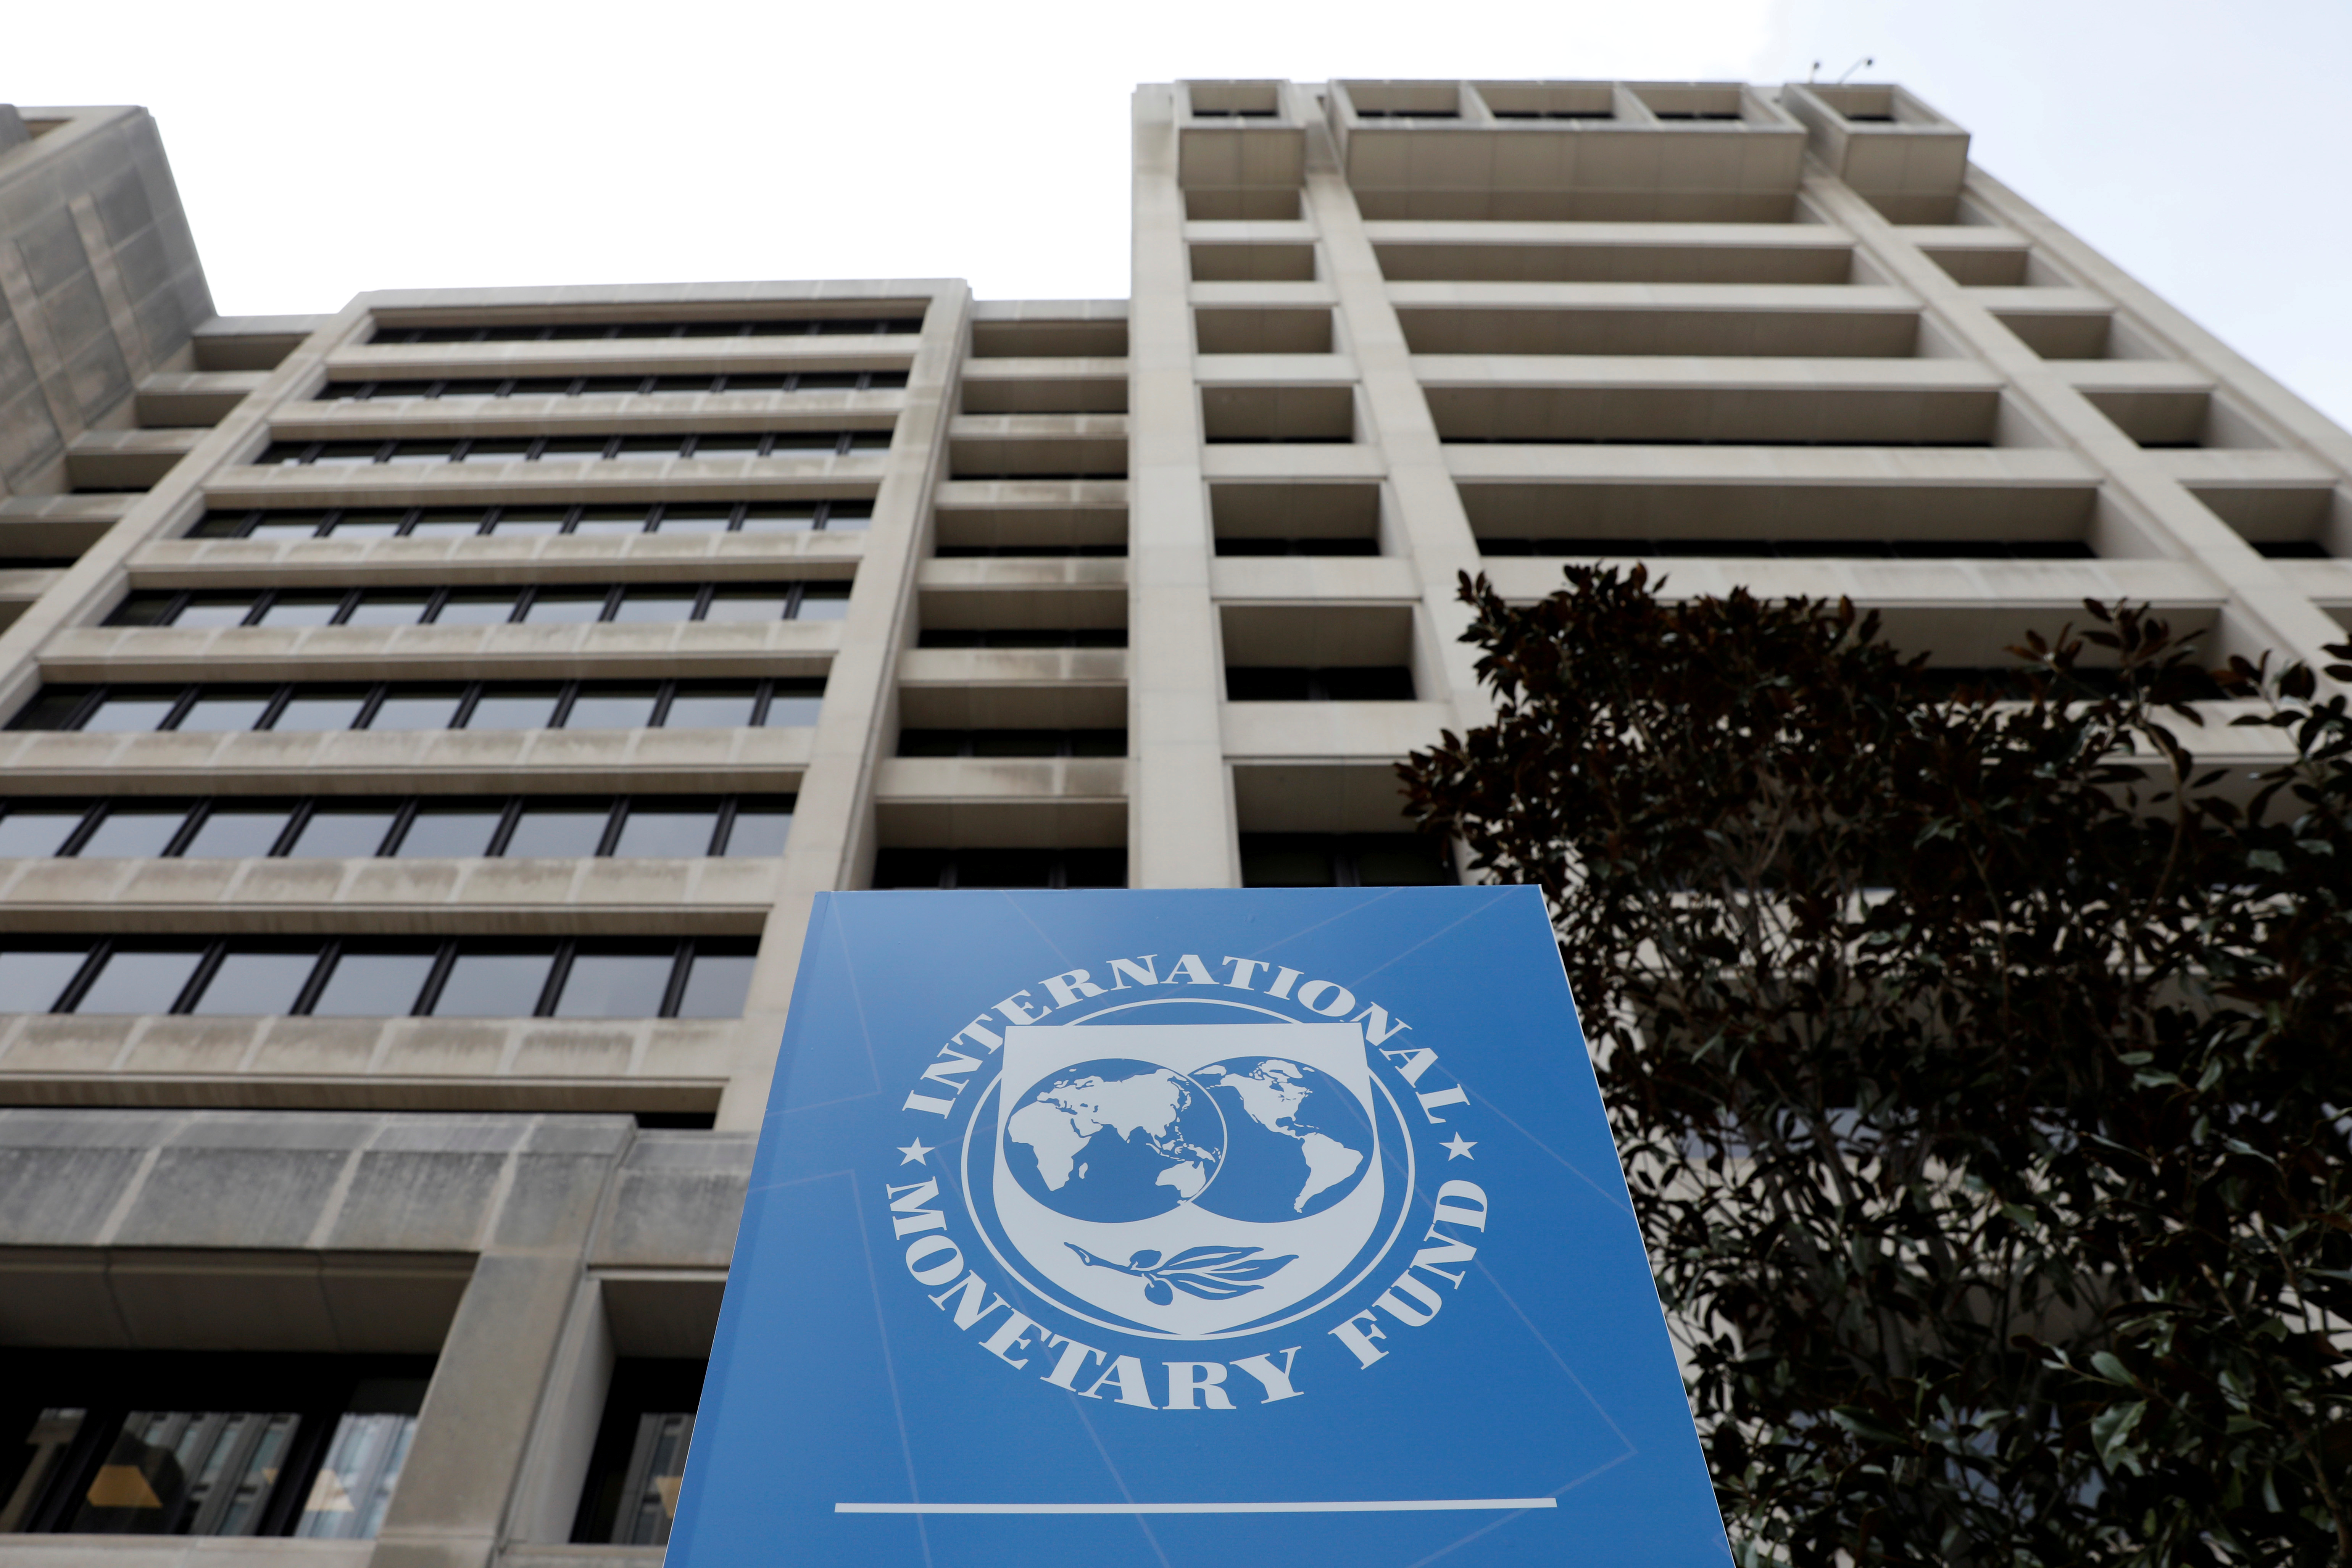 Сайт мвф. Международный валютный фонд (МВФ) - International monetary Fund (IMF). Штаб квартира МВФ В Вашингтоне. Здание МВФ США. Флаг МВФ.